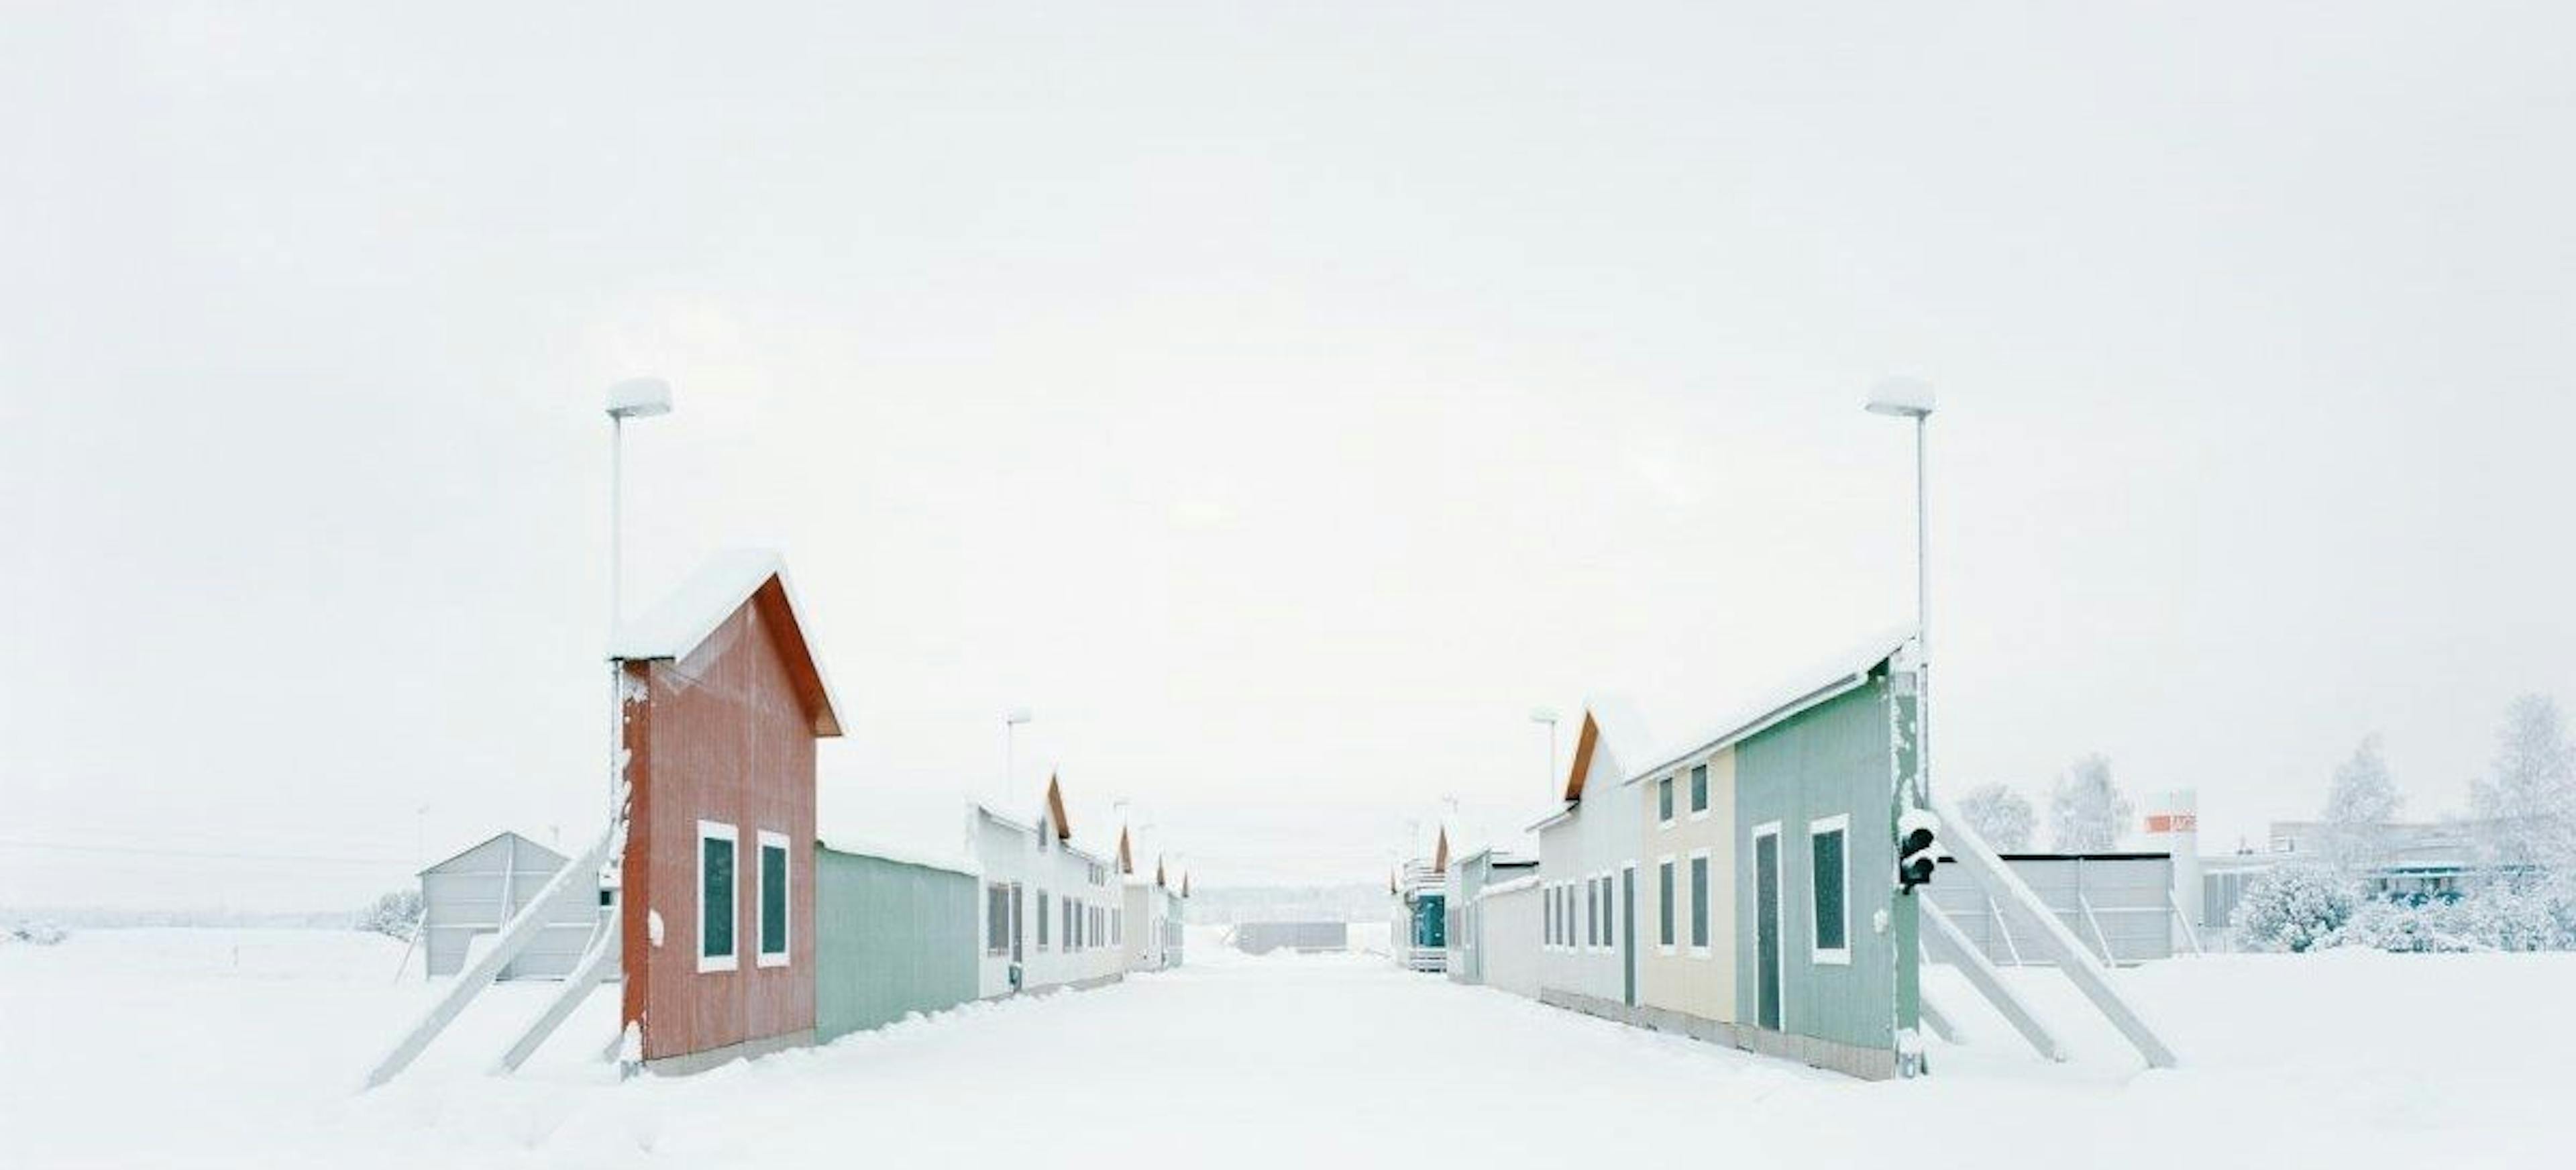 Gregor Sailer: Carson City VI/Vågårda, Sweden, from the series “The Potemkin Village”, 2016